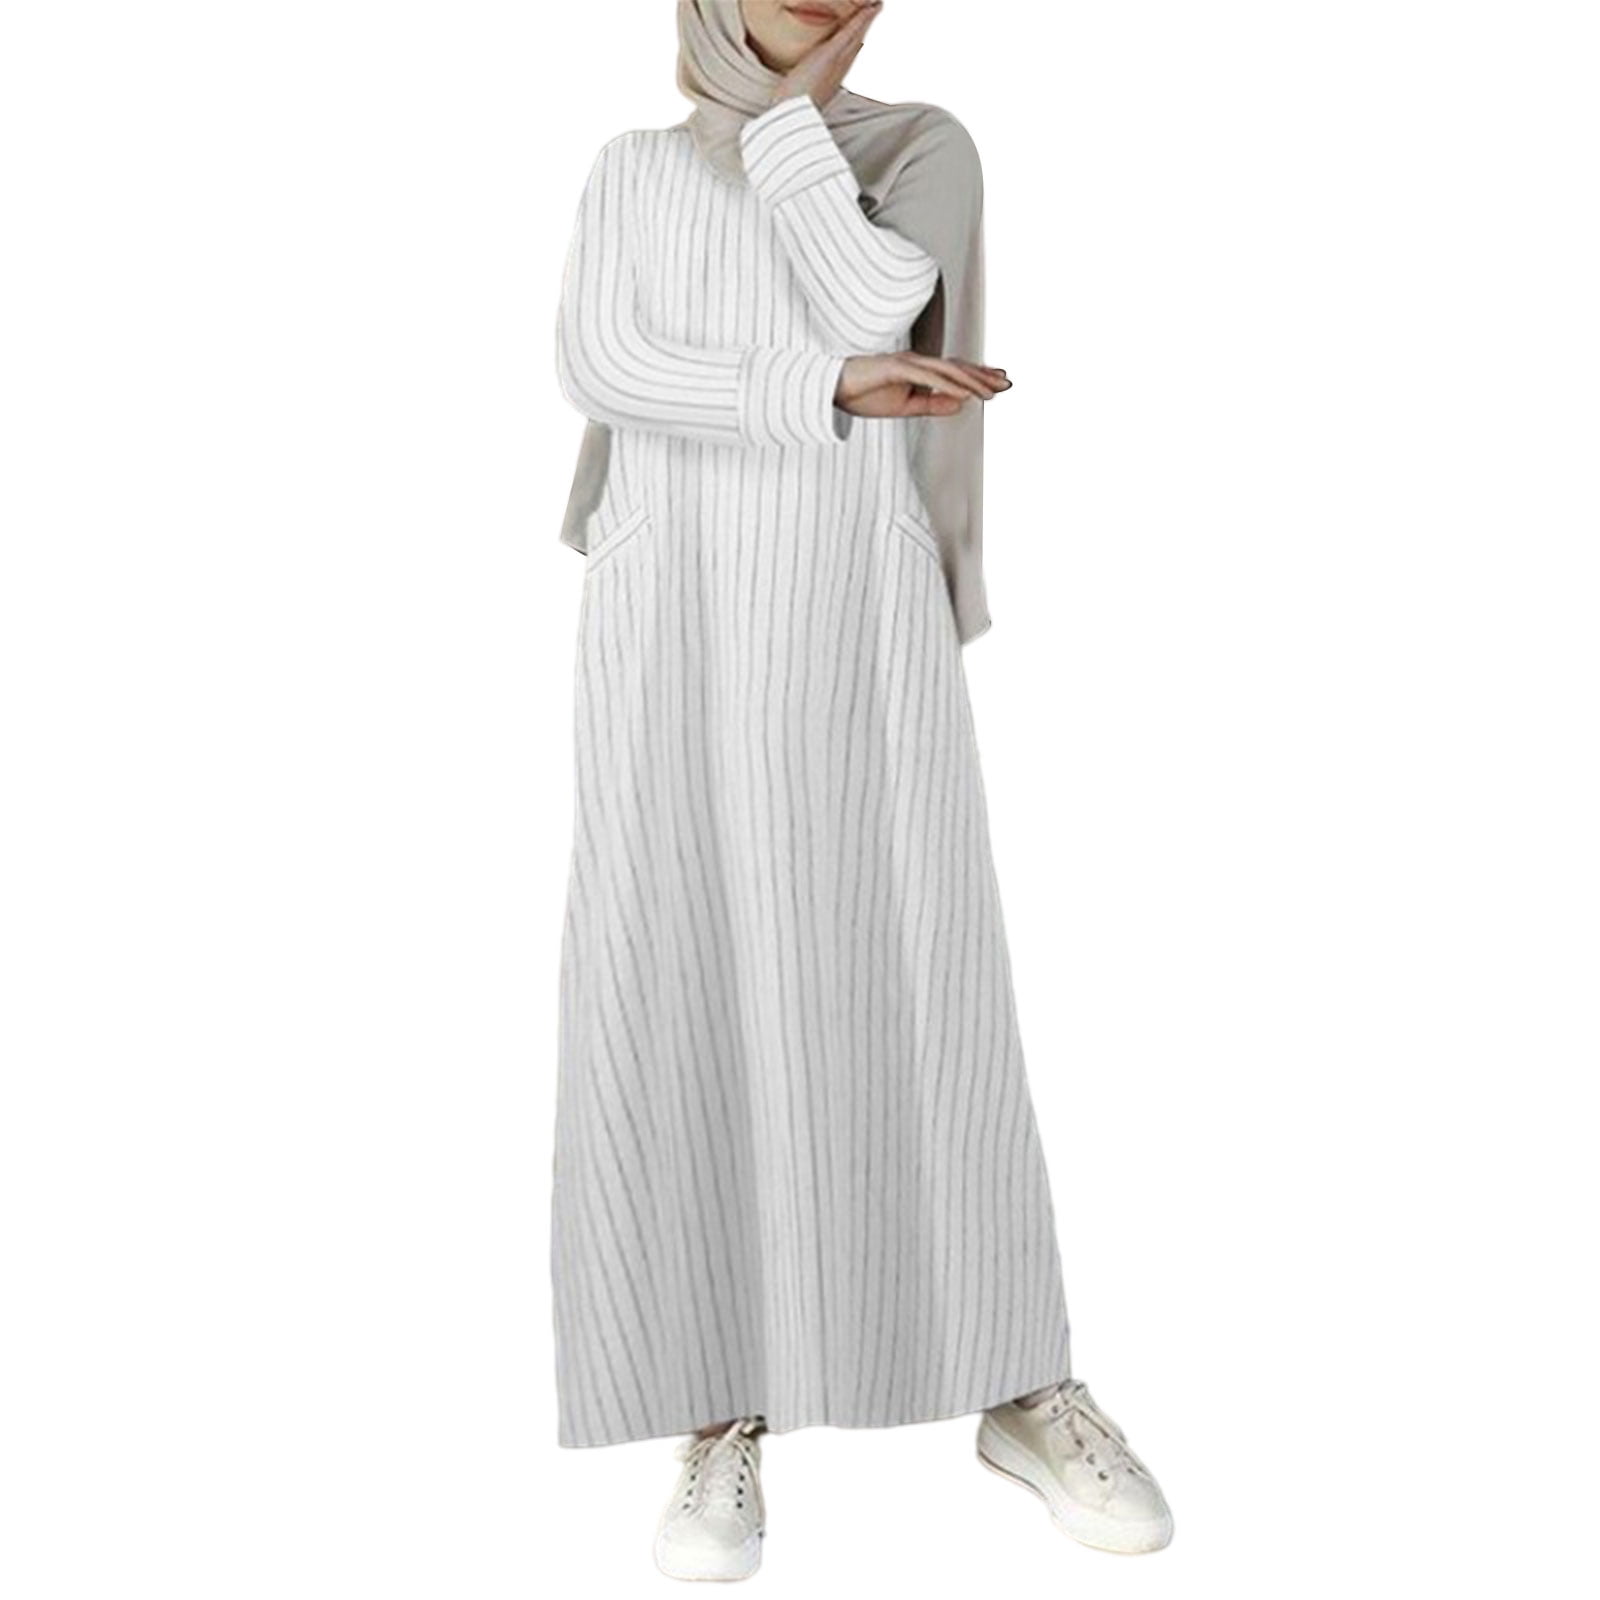 Women Muslim Cotton Linen A-Line Maxi Dress Long Sleeve Striped Print ...